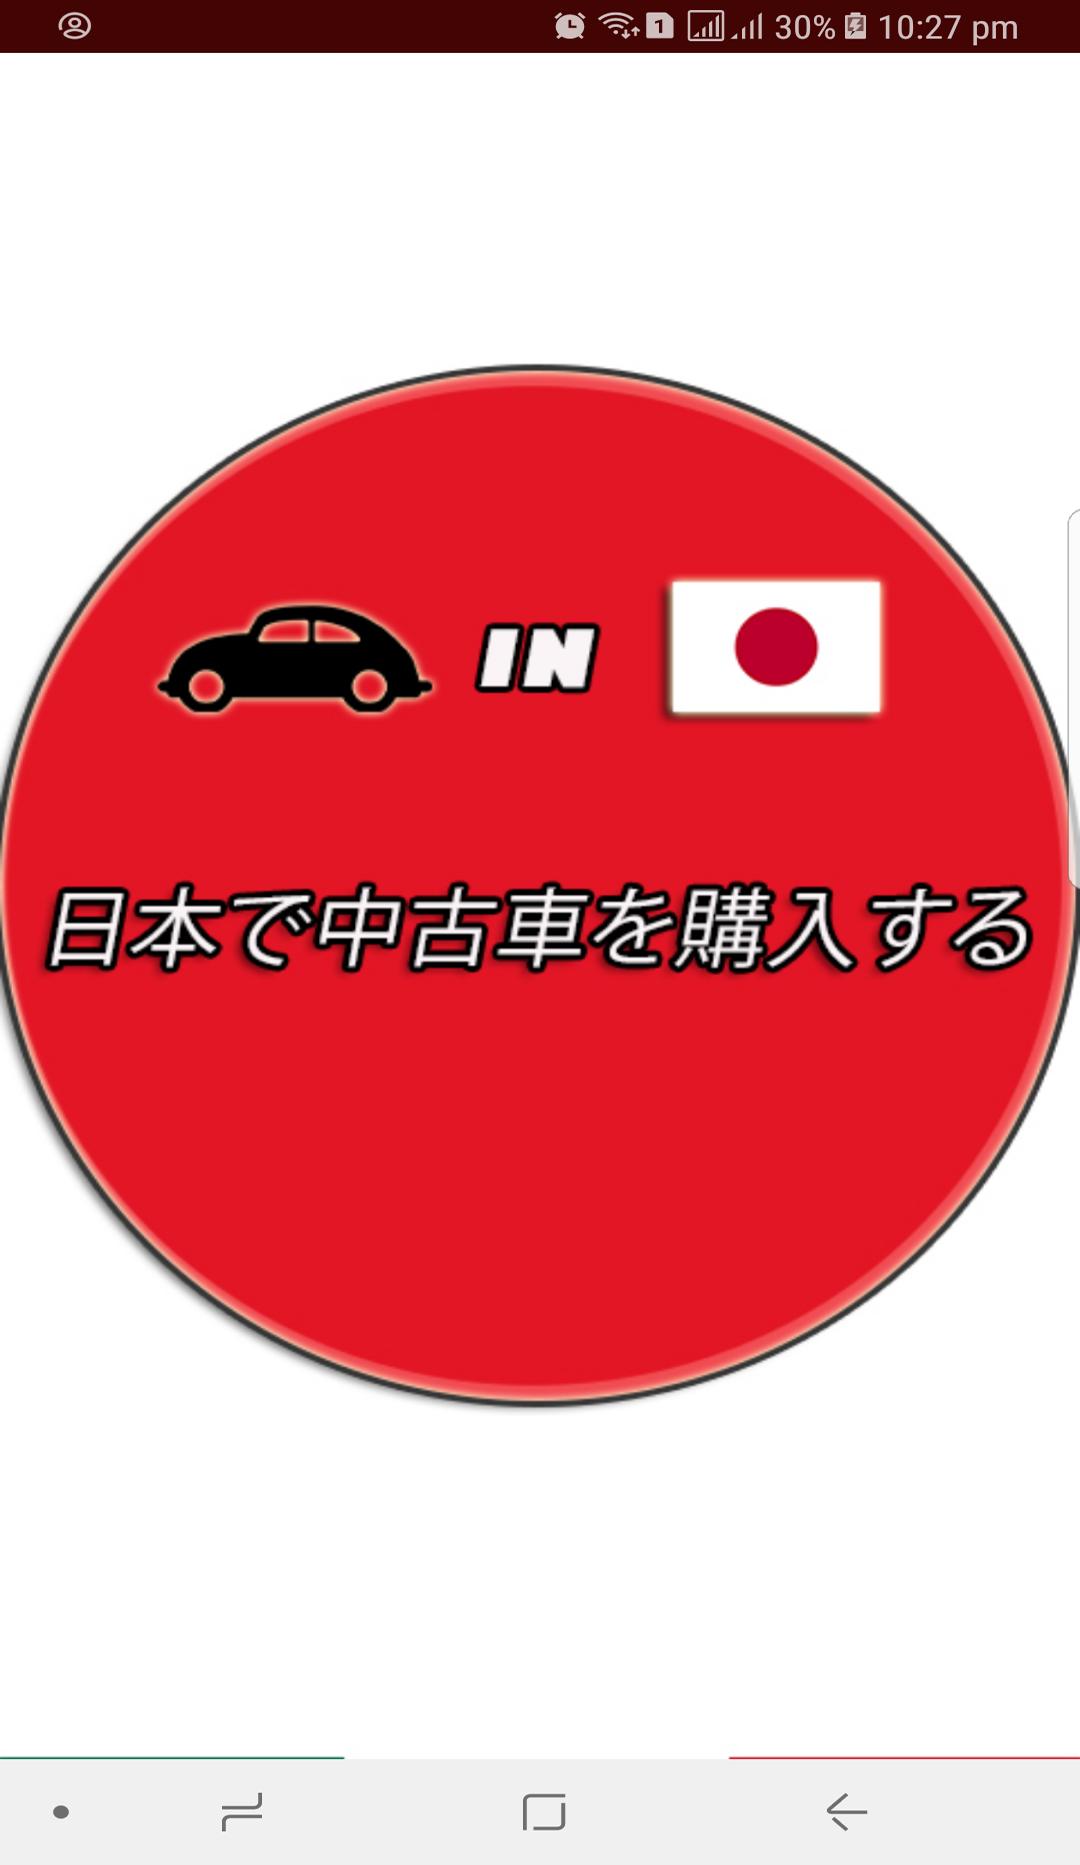 中古車ジャパン For Android Apk Download